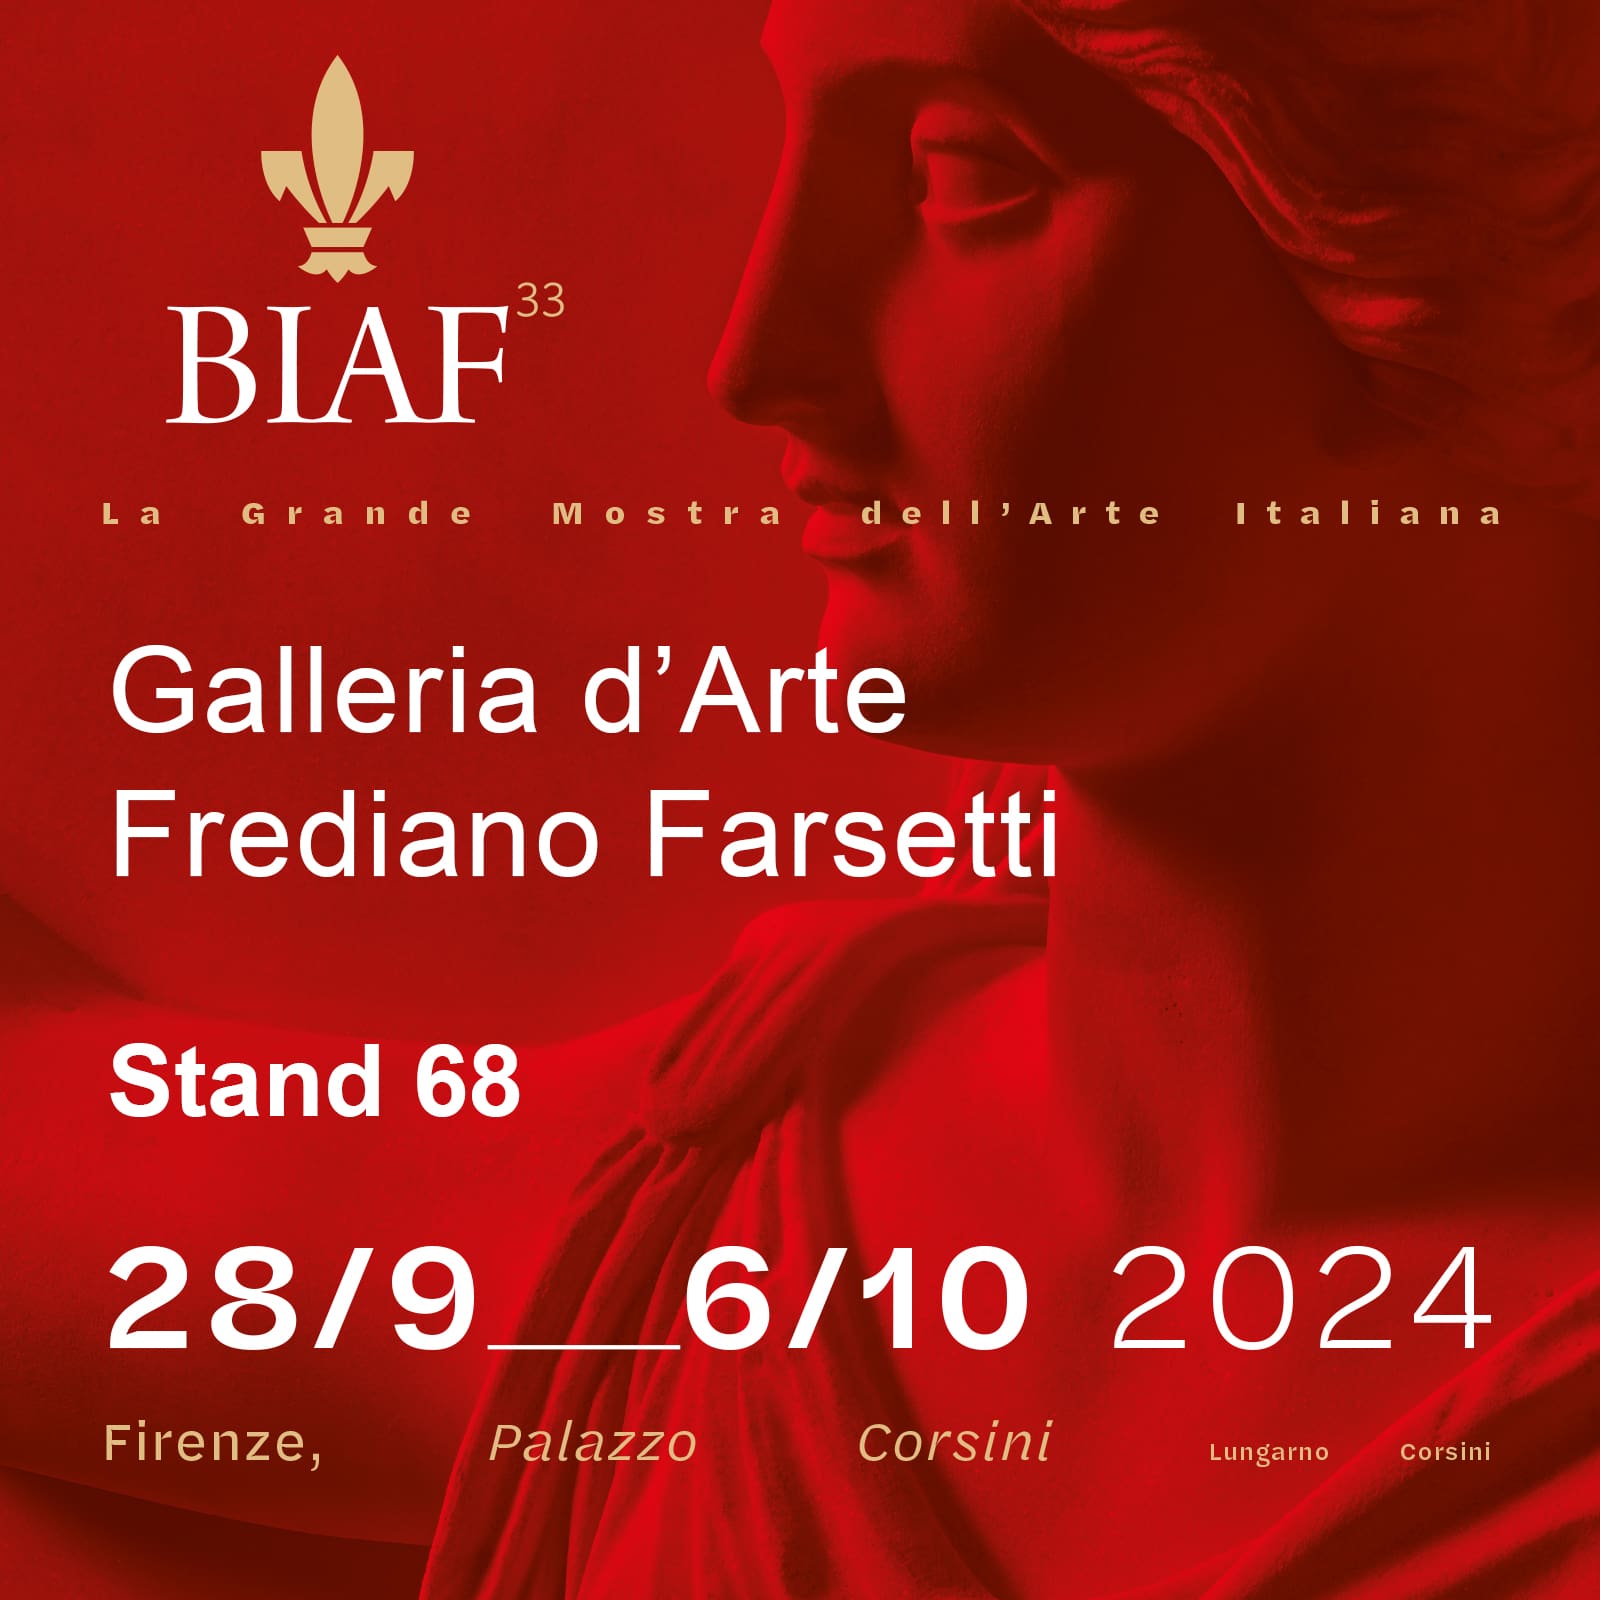 33esima Biennale Internazionale dell’Antiquariato di Firenze al Palazzo Corsini, dal 28 settembre al 6 ottobre 2024